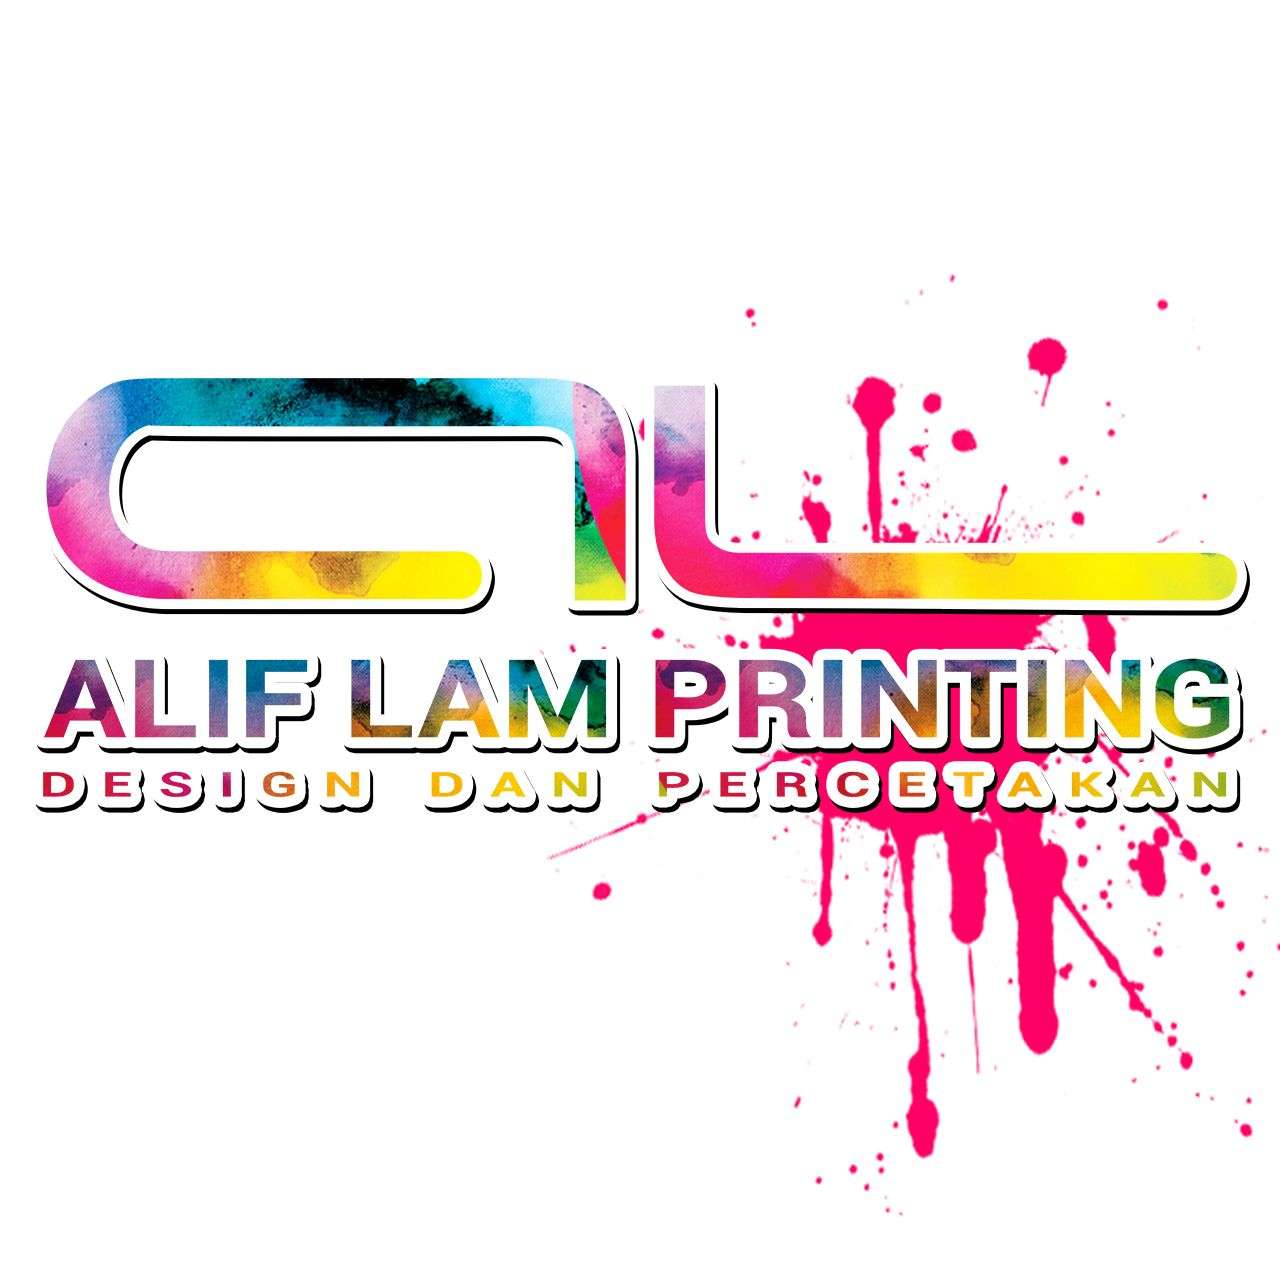 Aliflam Printing